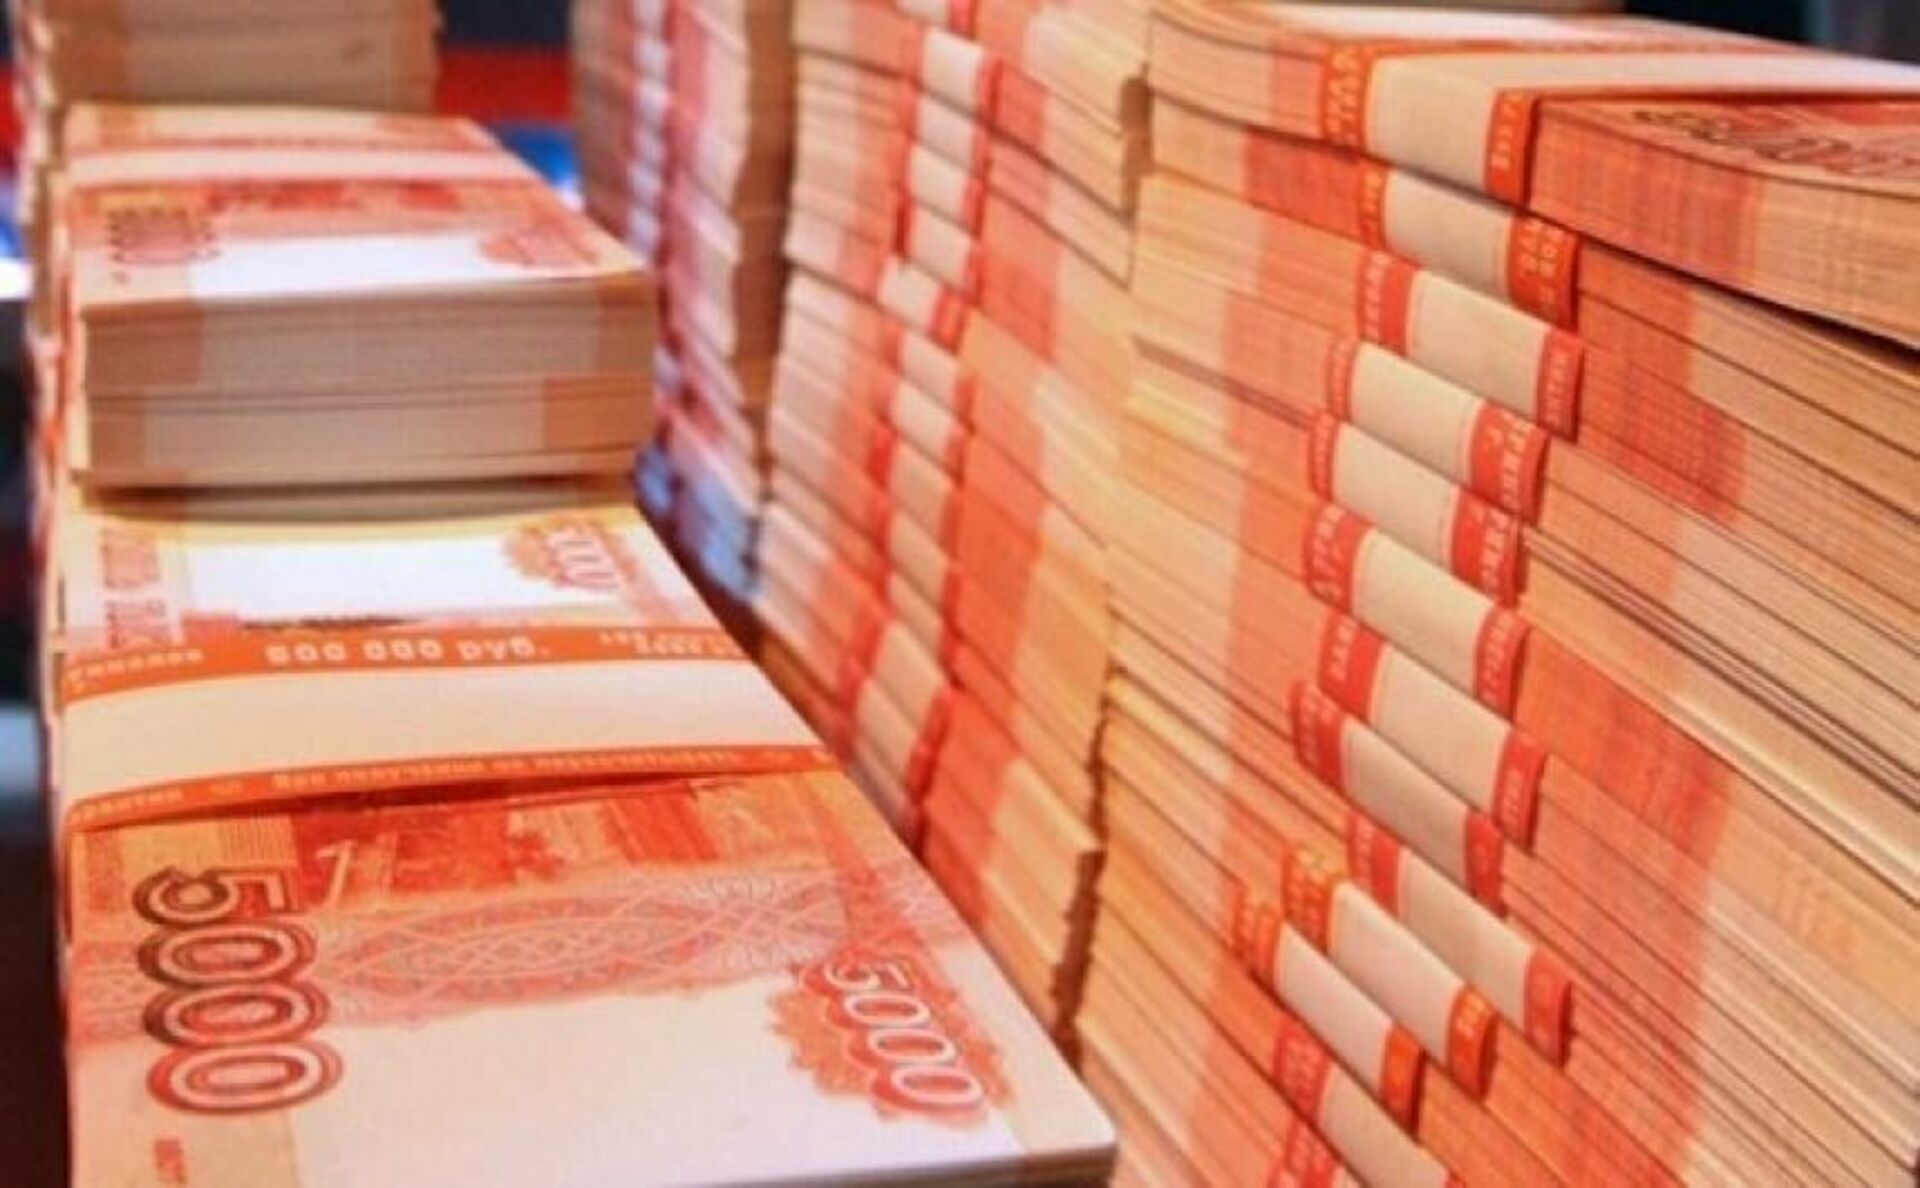 Бизнес вложить миллион рублей